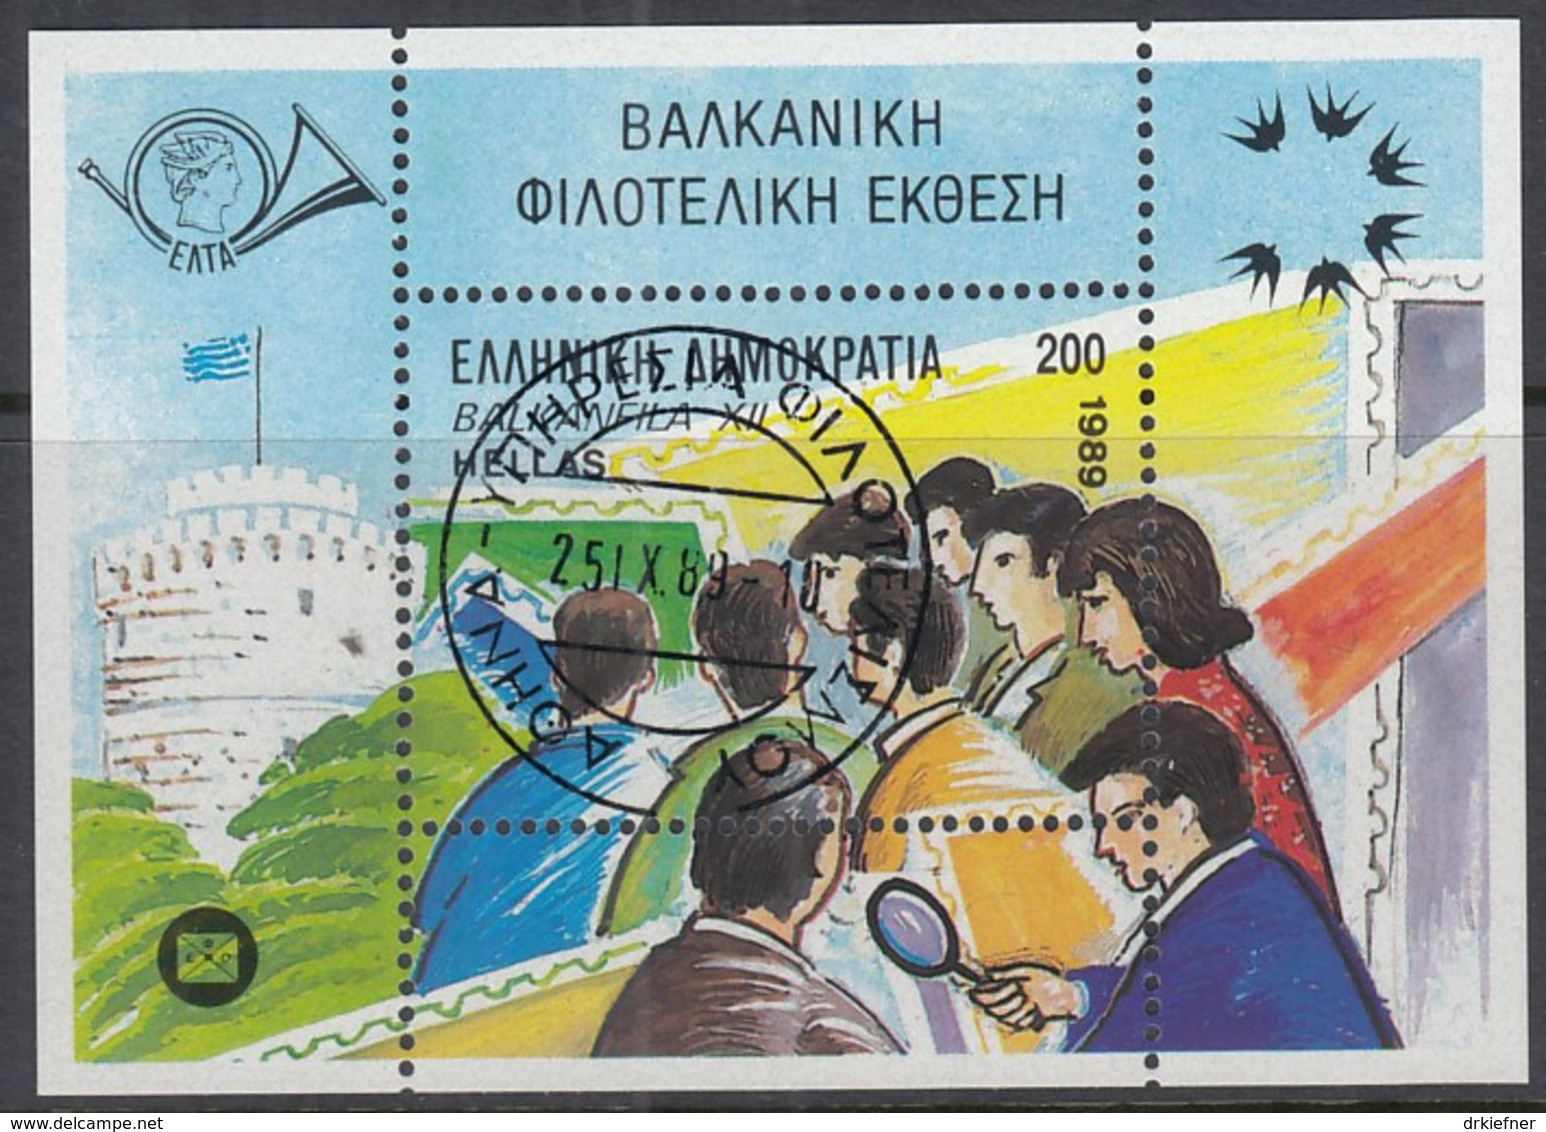 GRIECHENLAND Block 7, Gestempelt, Internationale Briefmarkenausstellung BALKANFILA ’89, Thessaloniki, 1989 - Blocks & Sheetlets